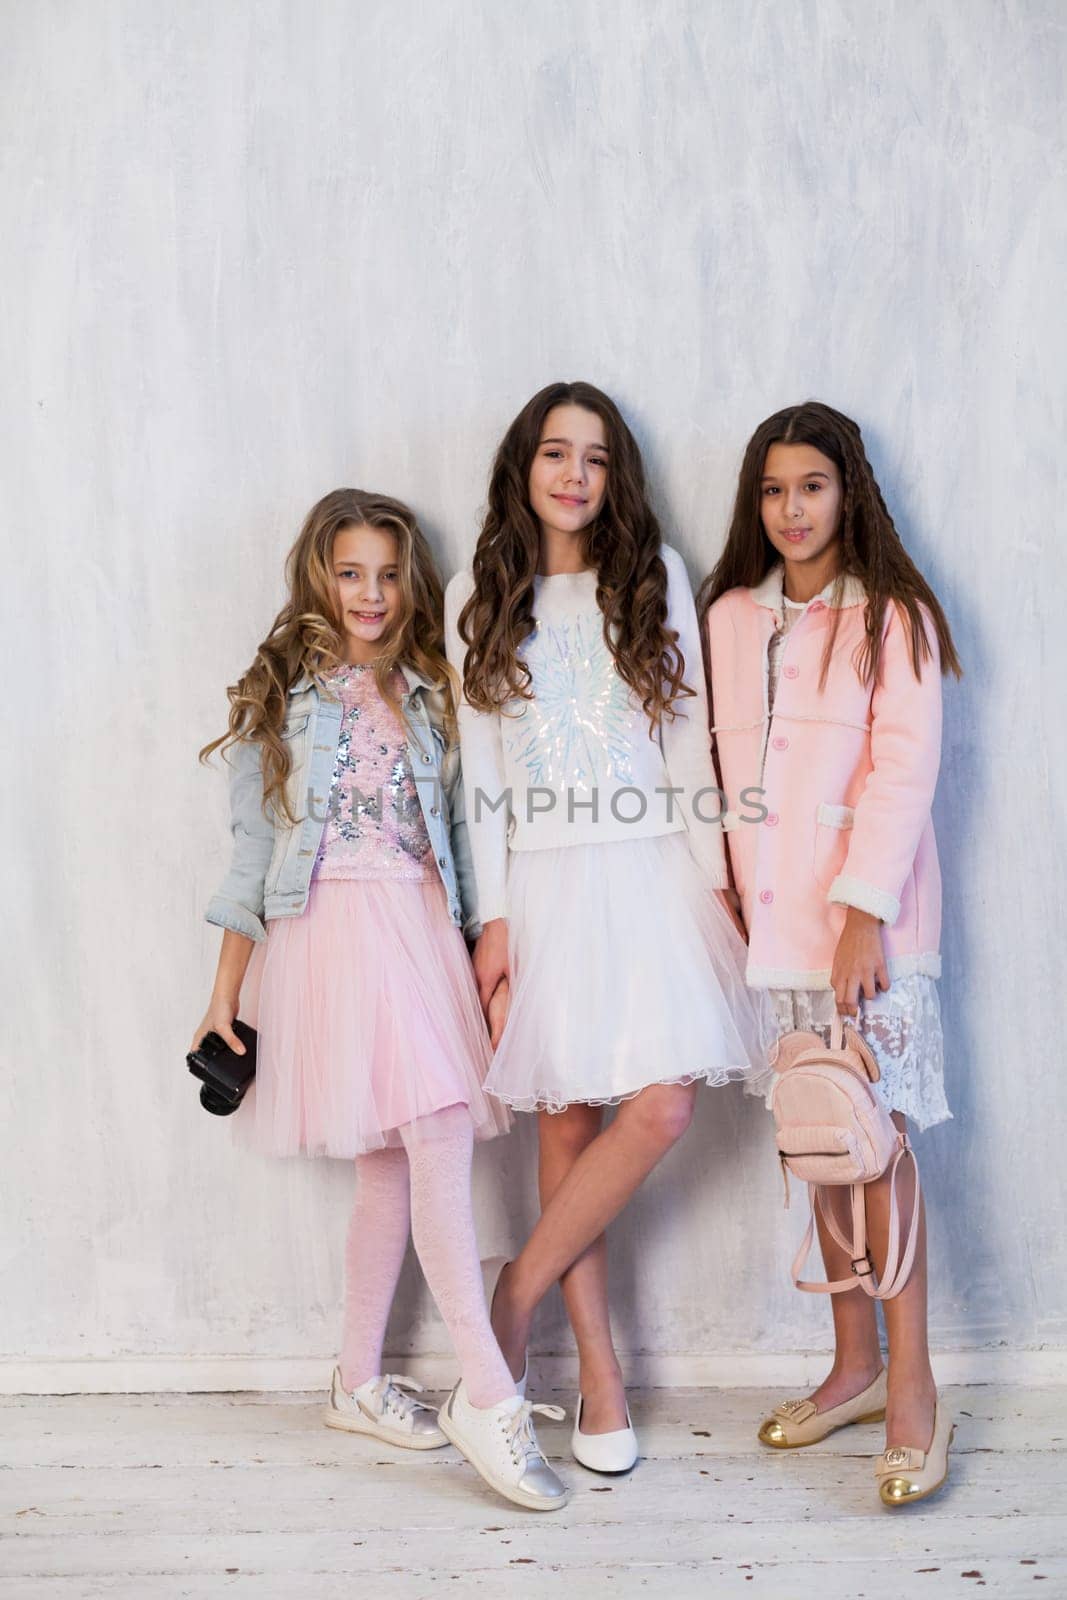 Three girls girlfriend photographer camera schoolgirl